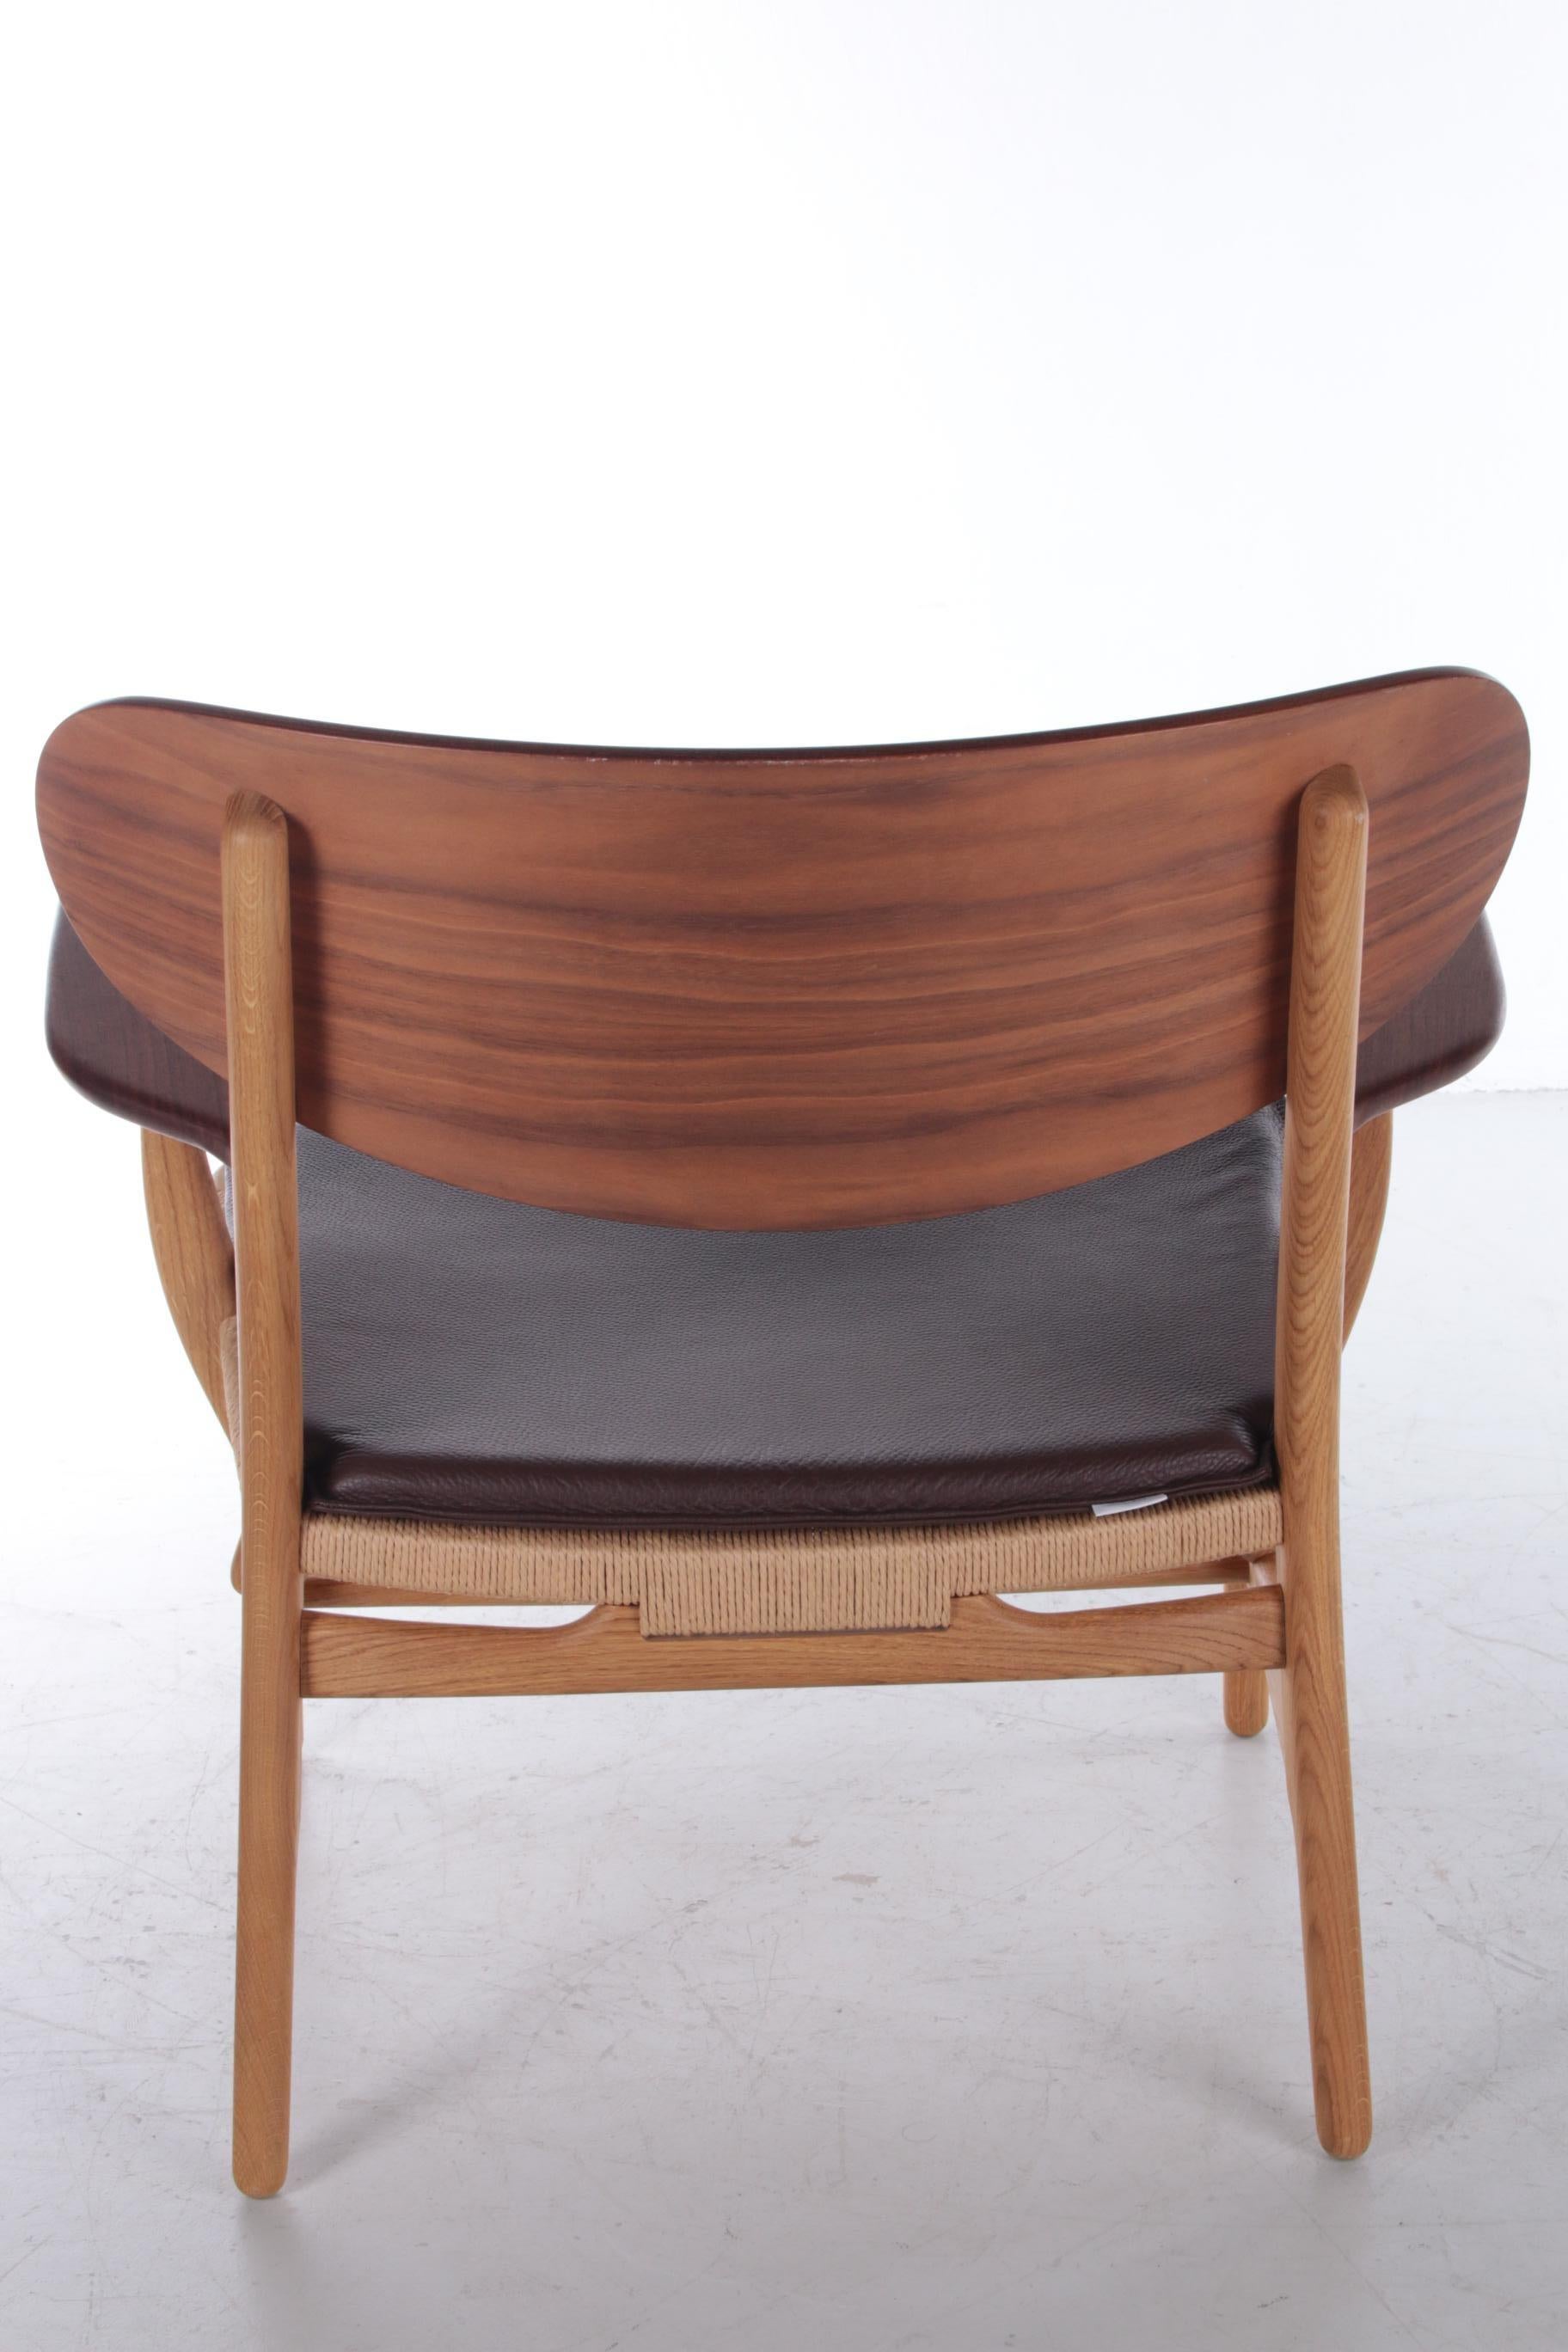 Oak Model Ch22 Lounge Chair by Hans J. Wegner for Carl Hansen & Søn